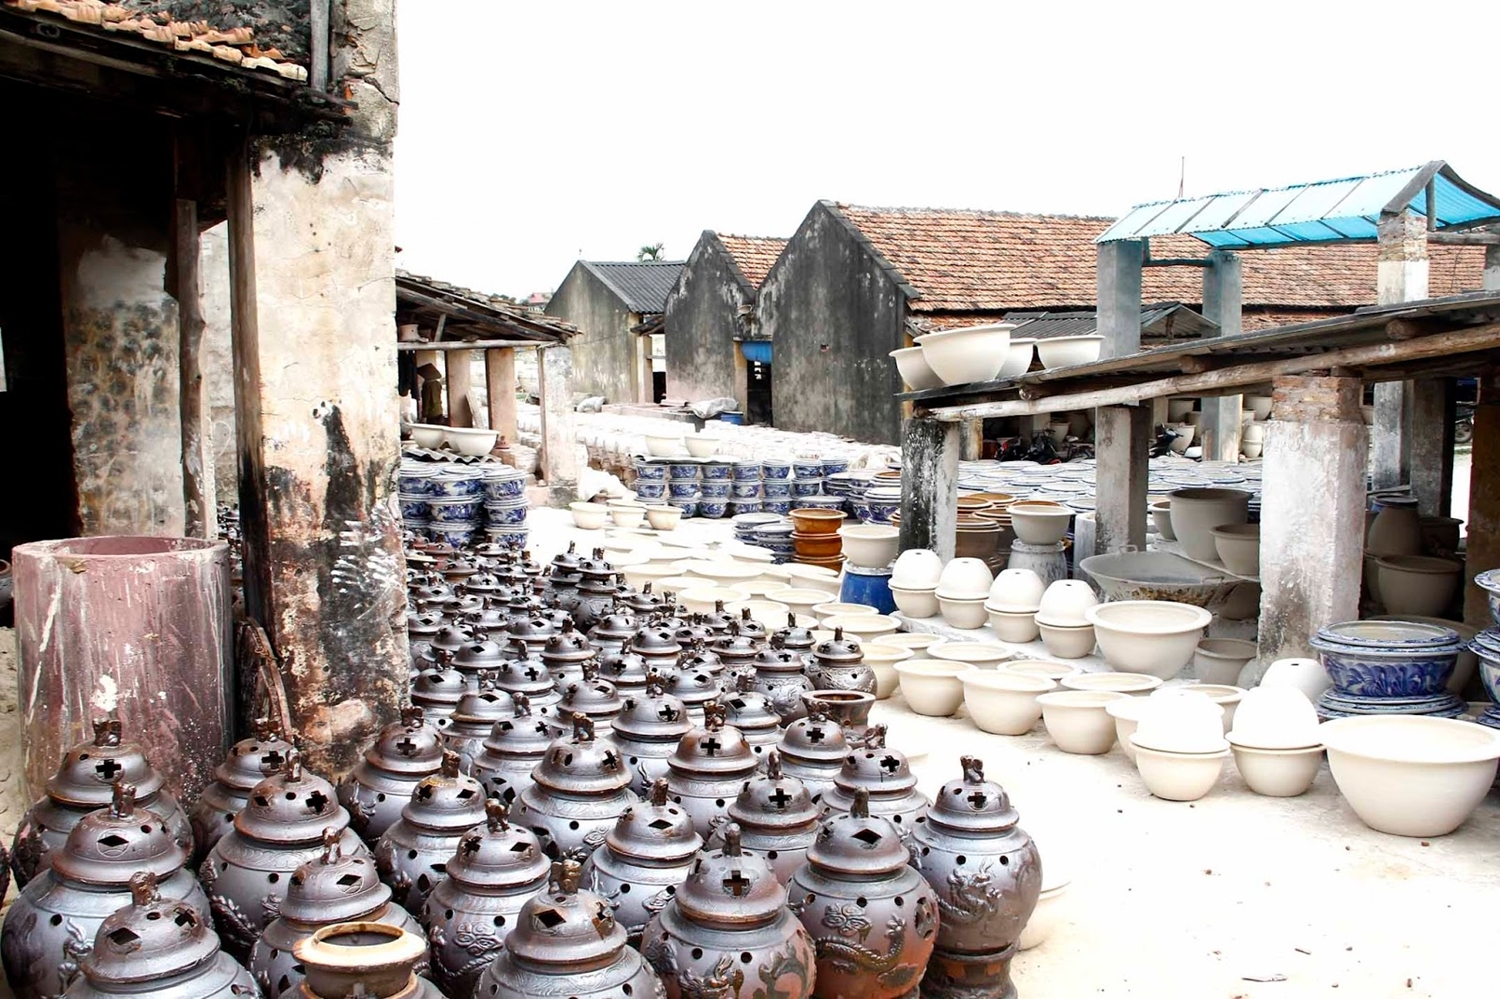 Bat Trang Ceramic Village Tour – Half Day